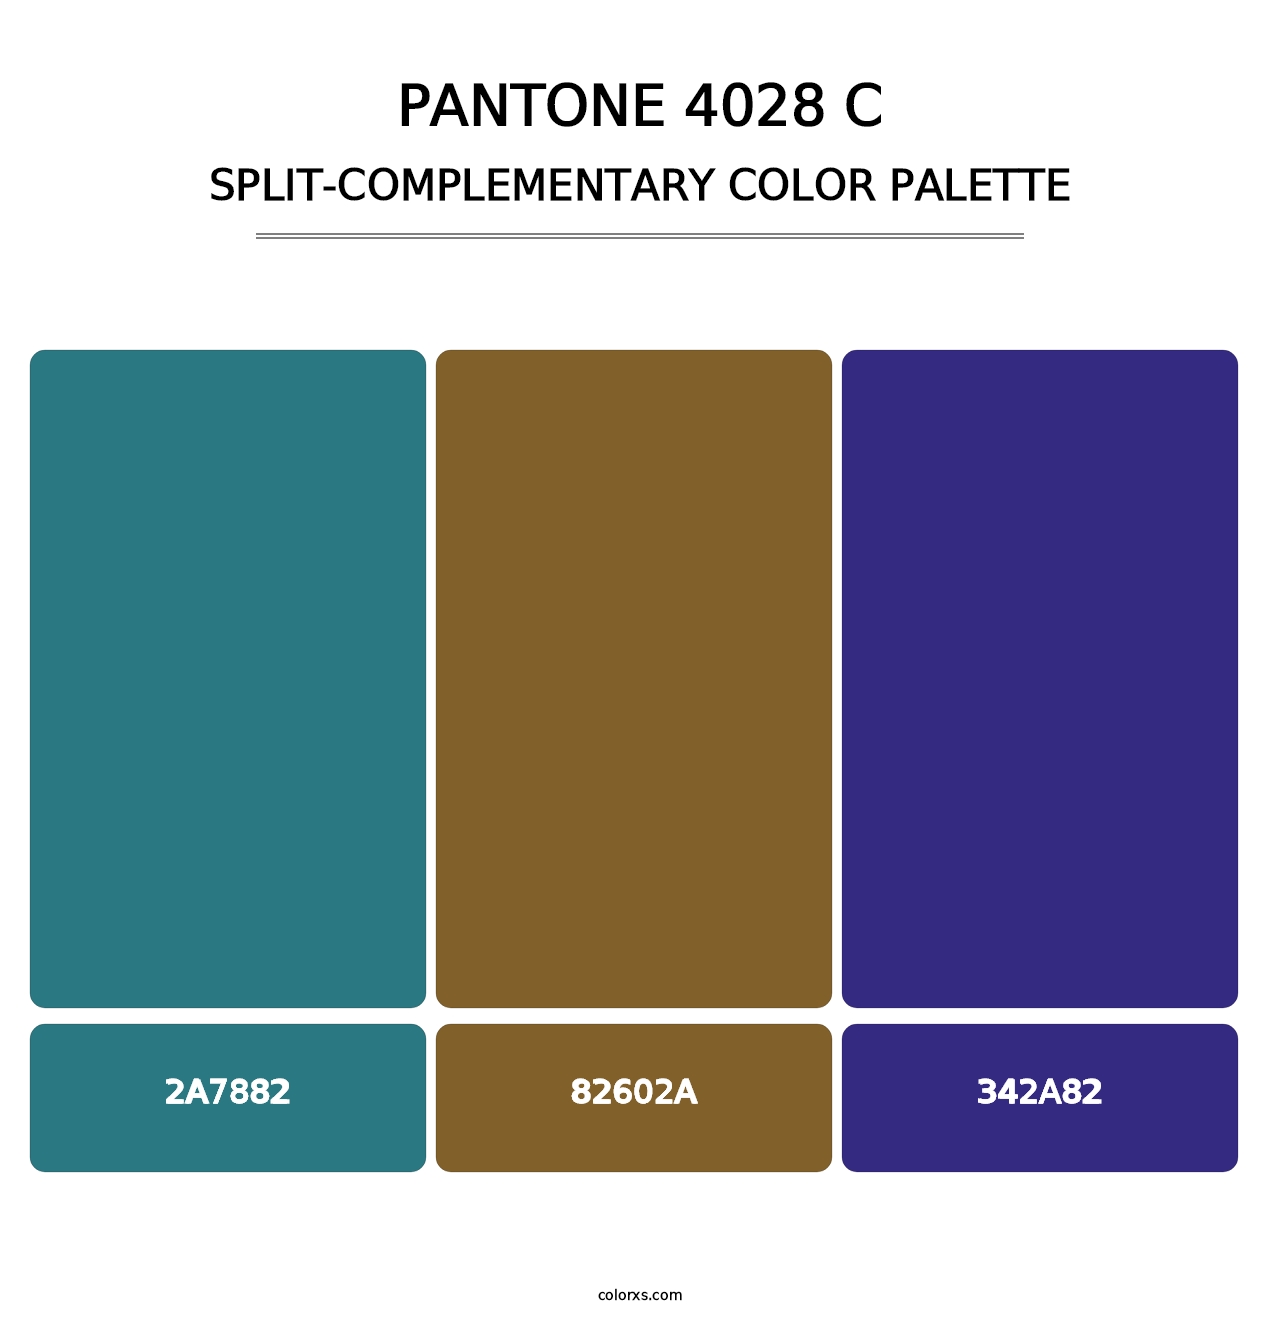 PANTONE 4028 C - Split-Complementary Color Palette